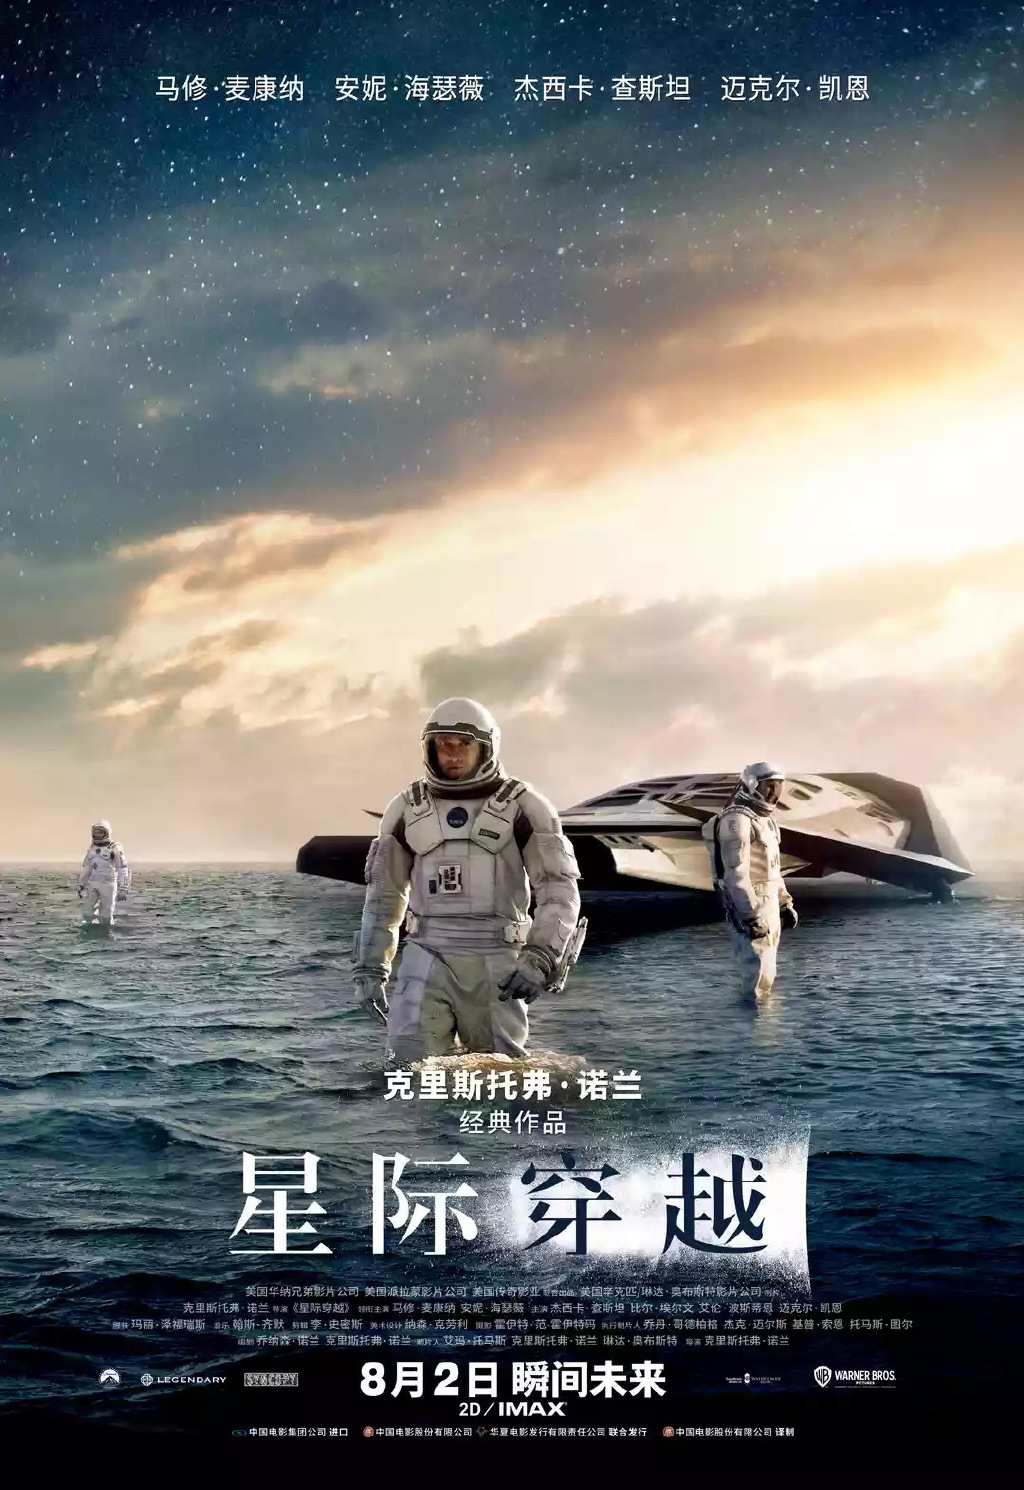 《盗梦空间》《星际穿越》的重映海报上，宣传词也与《信条》的宣传词相呼应。